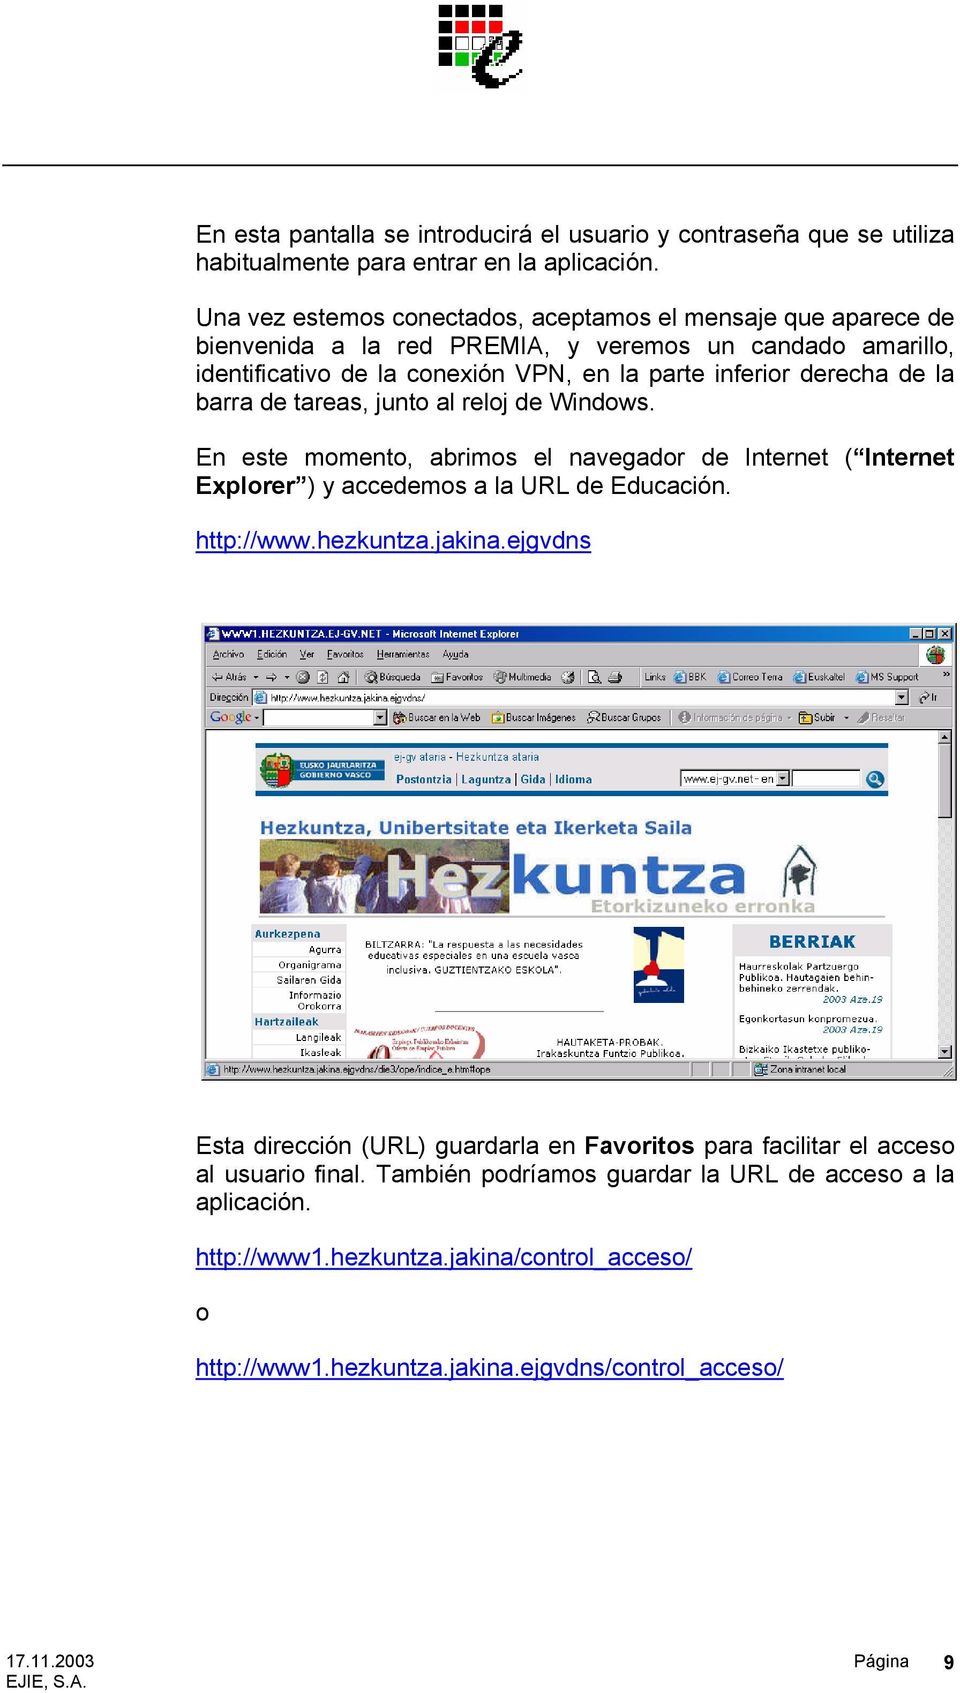 derecha de la barra de tareas, junto al reloj de Windows. En este momento, abrimos el navegador de Internet ( Internet Explorer ) y accedemos a la URL de Educación. http://www.hezkuntza.